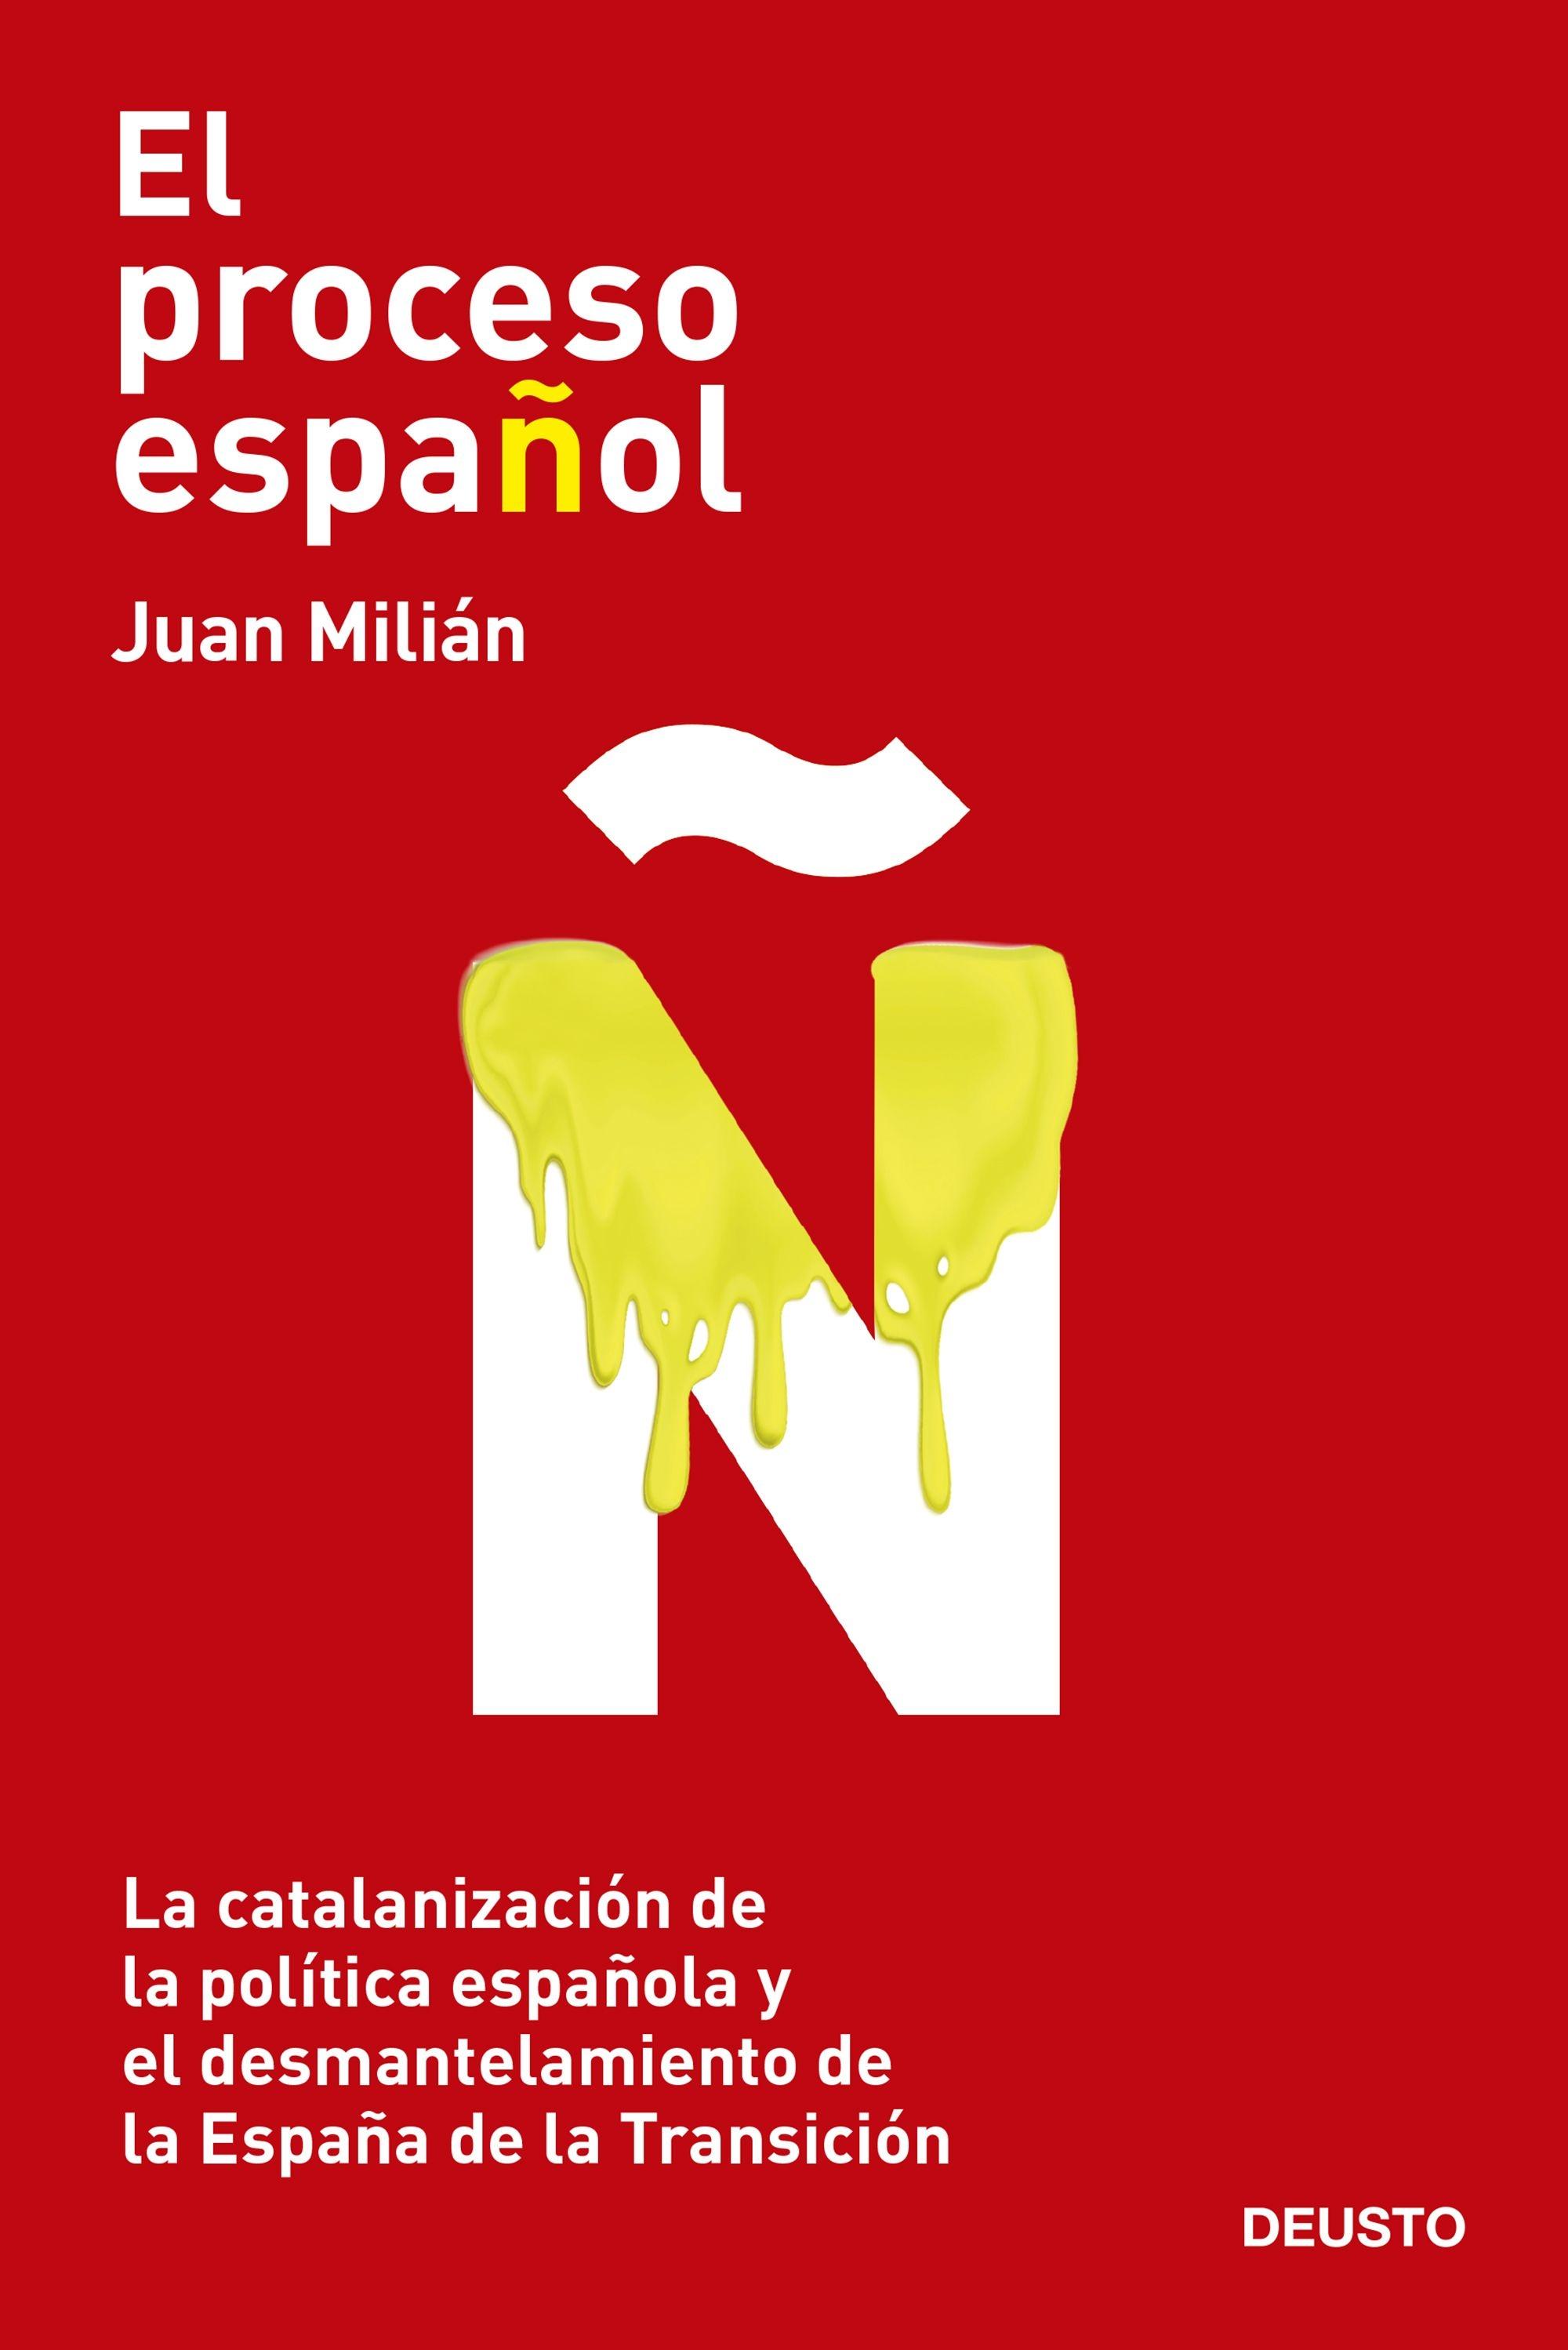 Proceso español, El "La catalanización de la política española y el desmantelamiento de la Es"